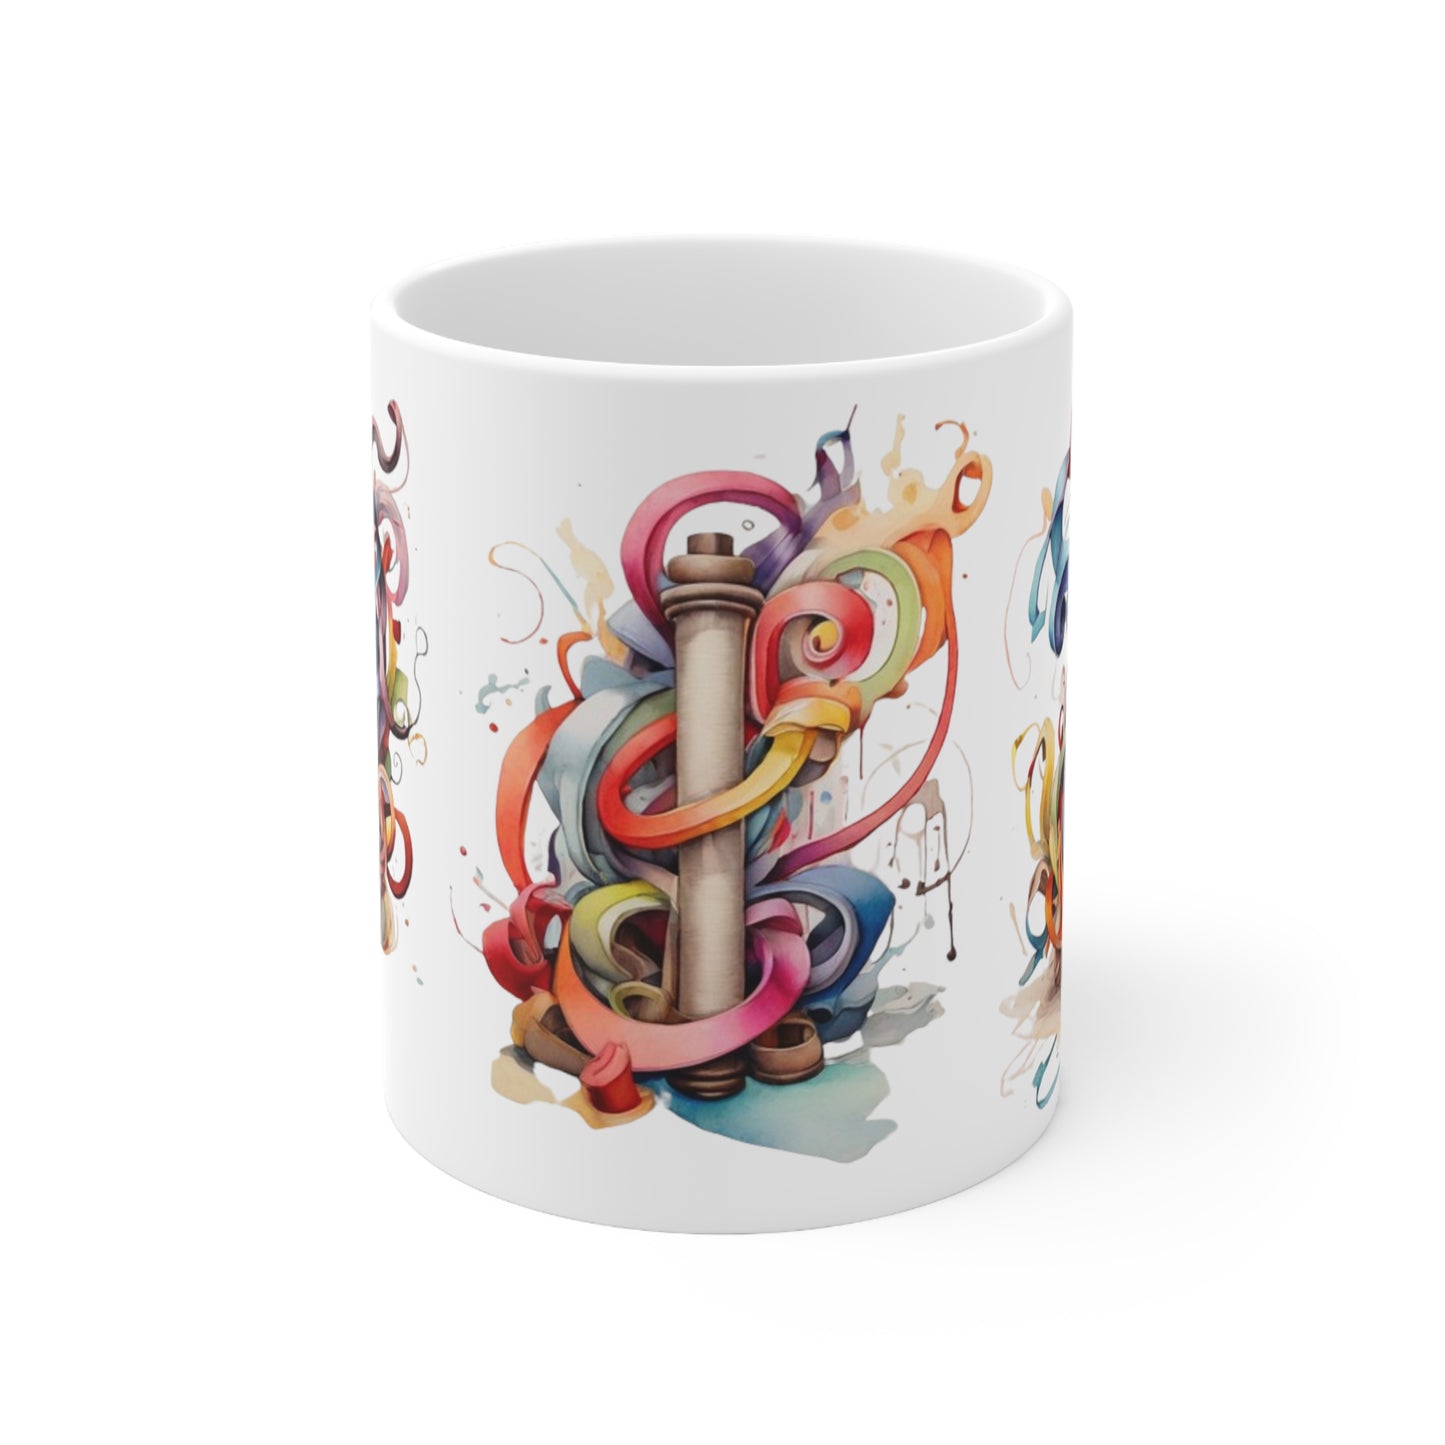 Colourful Messy Art Mug - Ceramic Coffee Mug 11oz